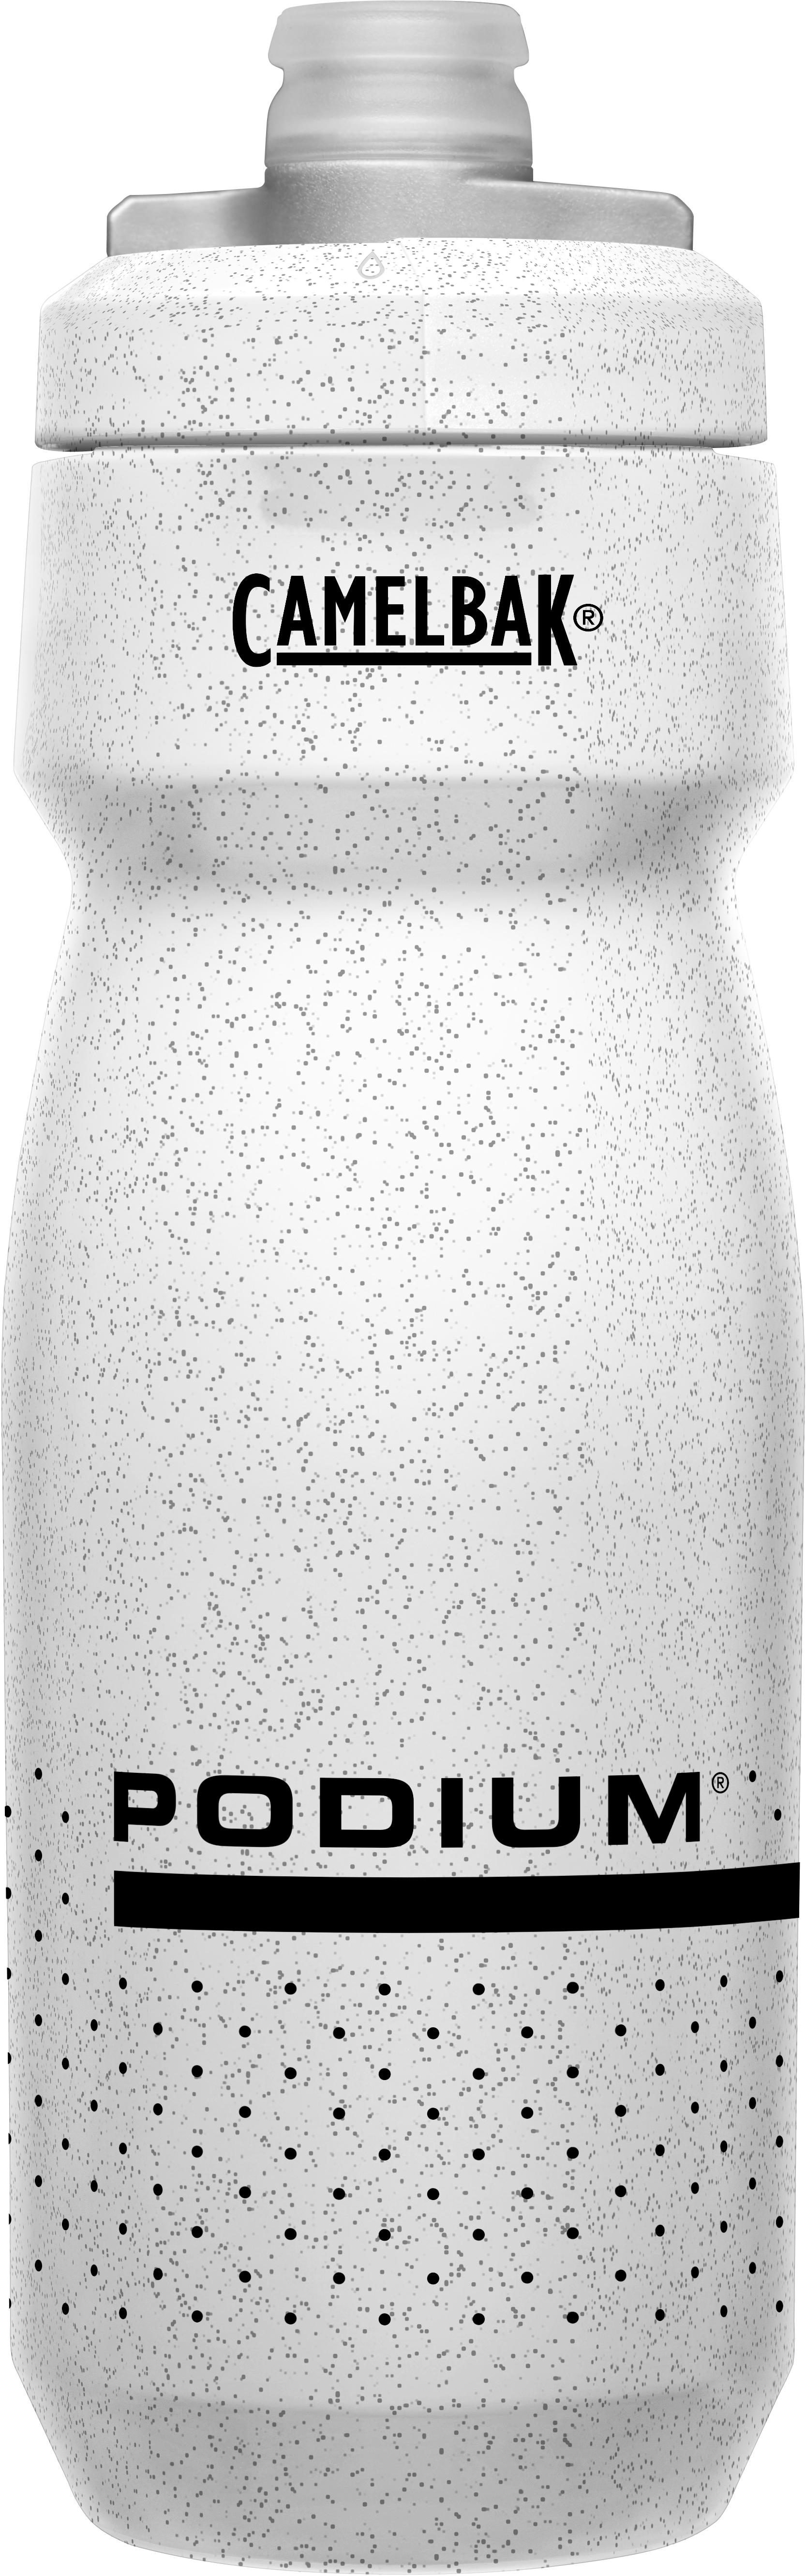 Camelbak Podium Water Bottle, 710Ml, White Speckle